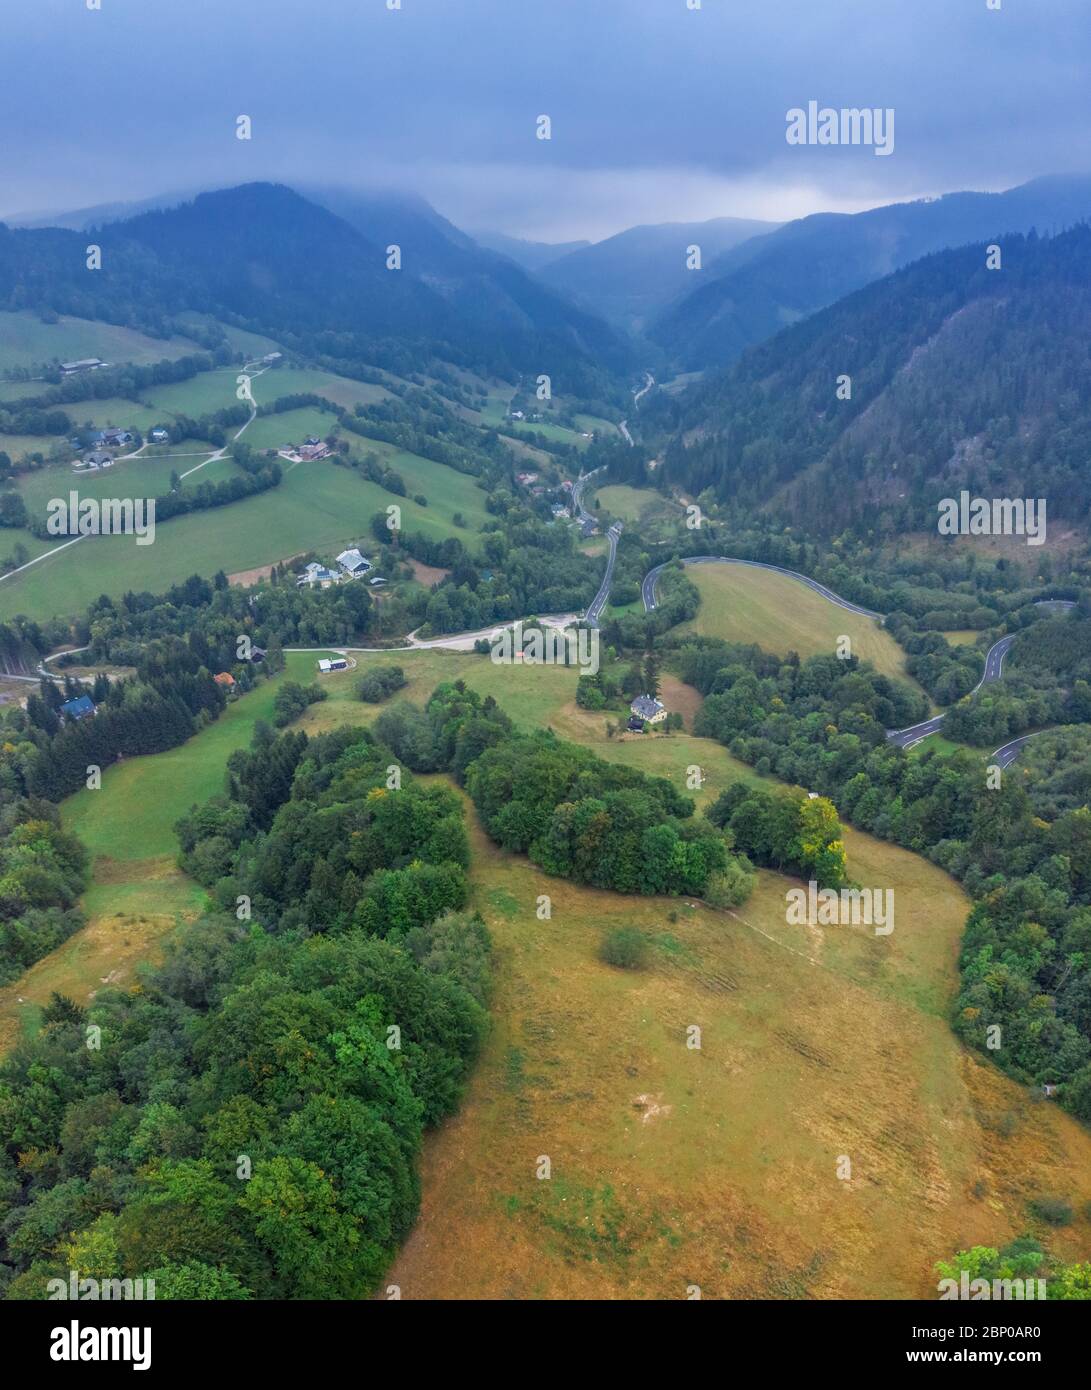 Splendida vista panoramica sulle colline e le montagne vicino alla città di Annaberg nel quartiere Lilienfeld, Bassa Austria. Foto dall'alto scattata sul drone. Foto Stock